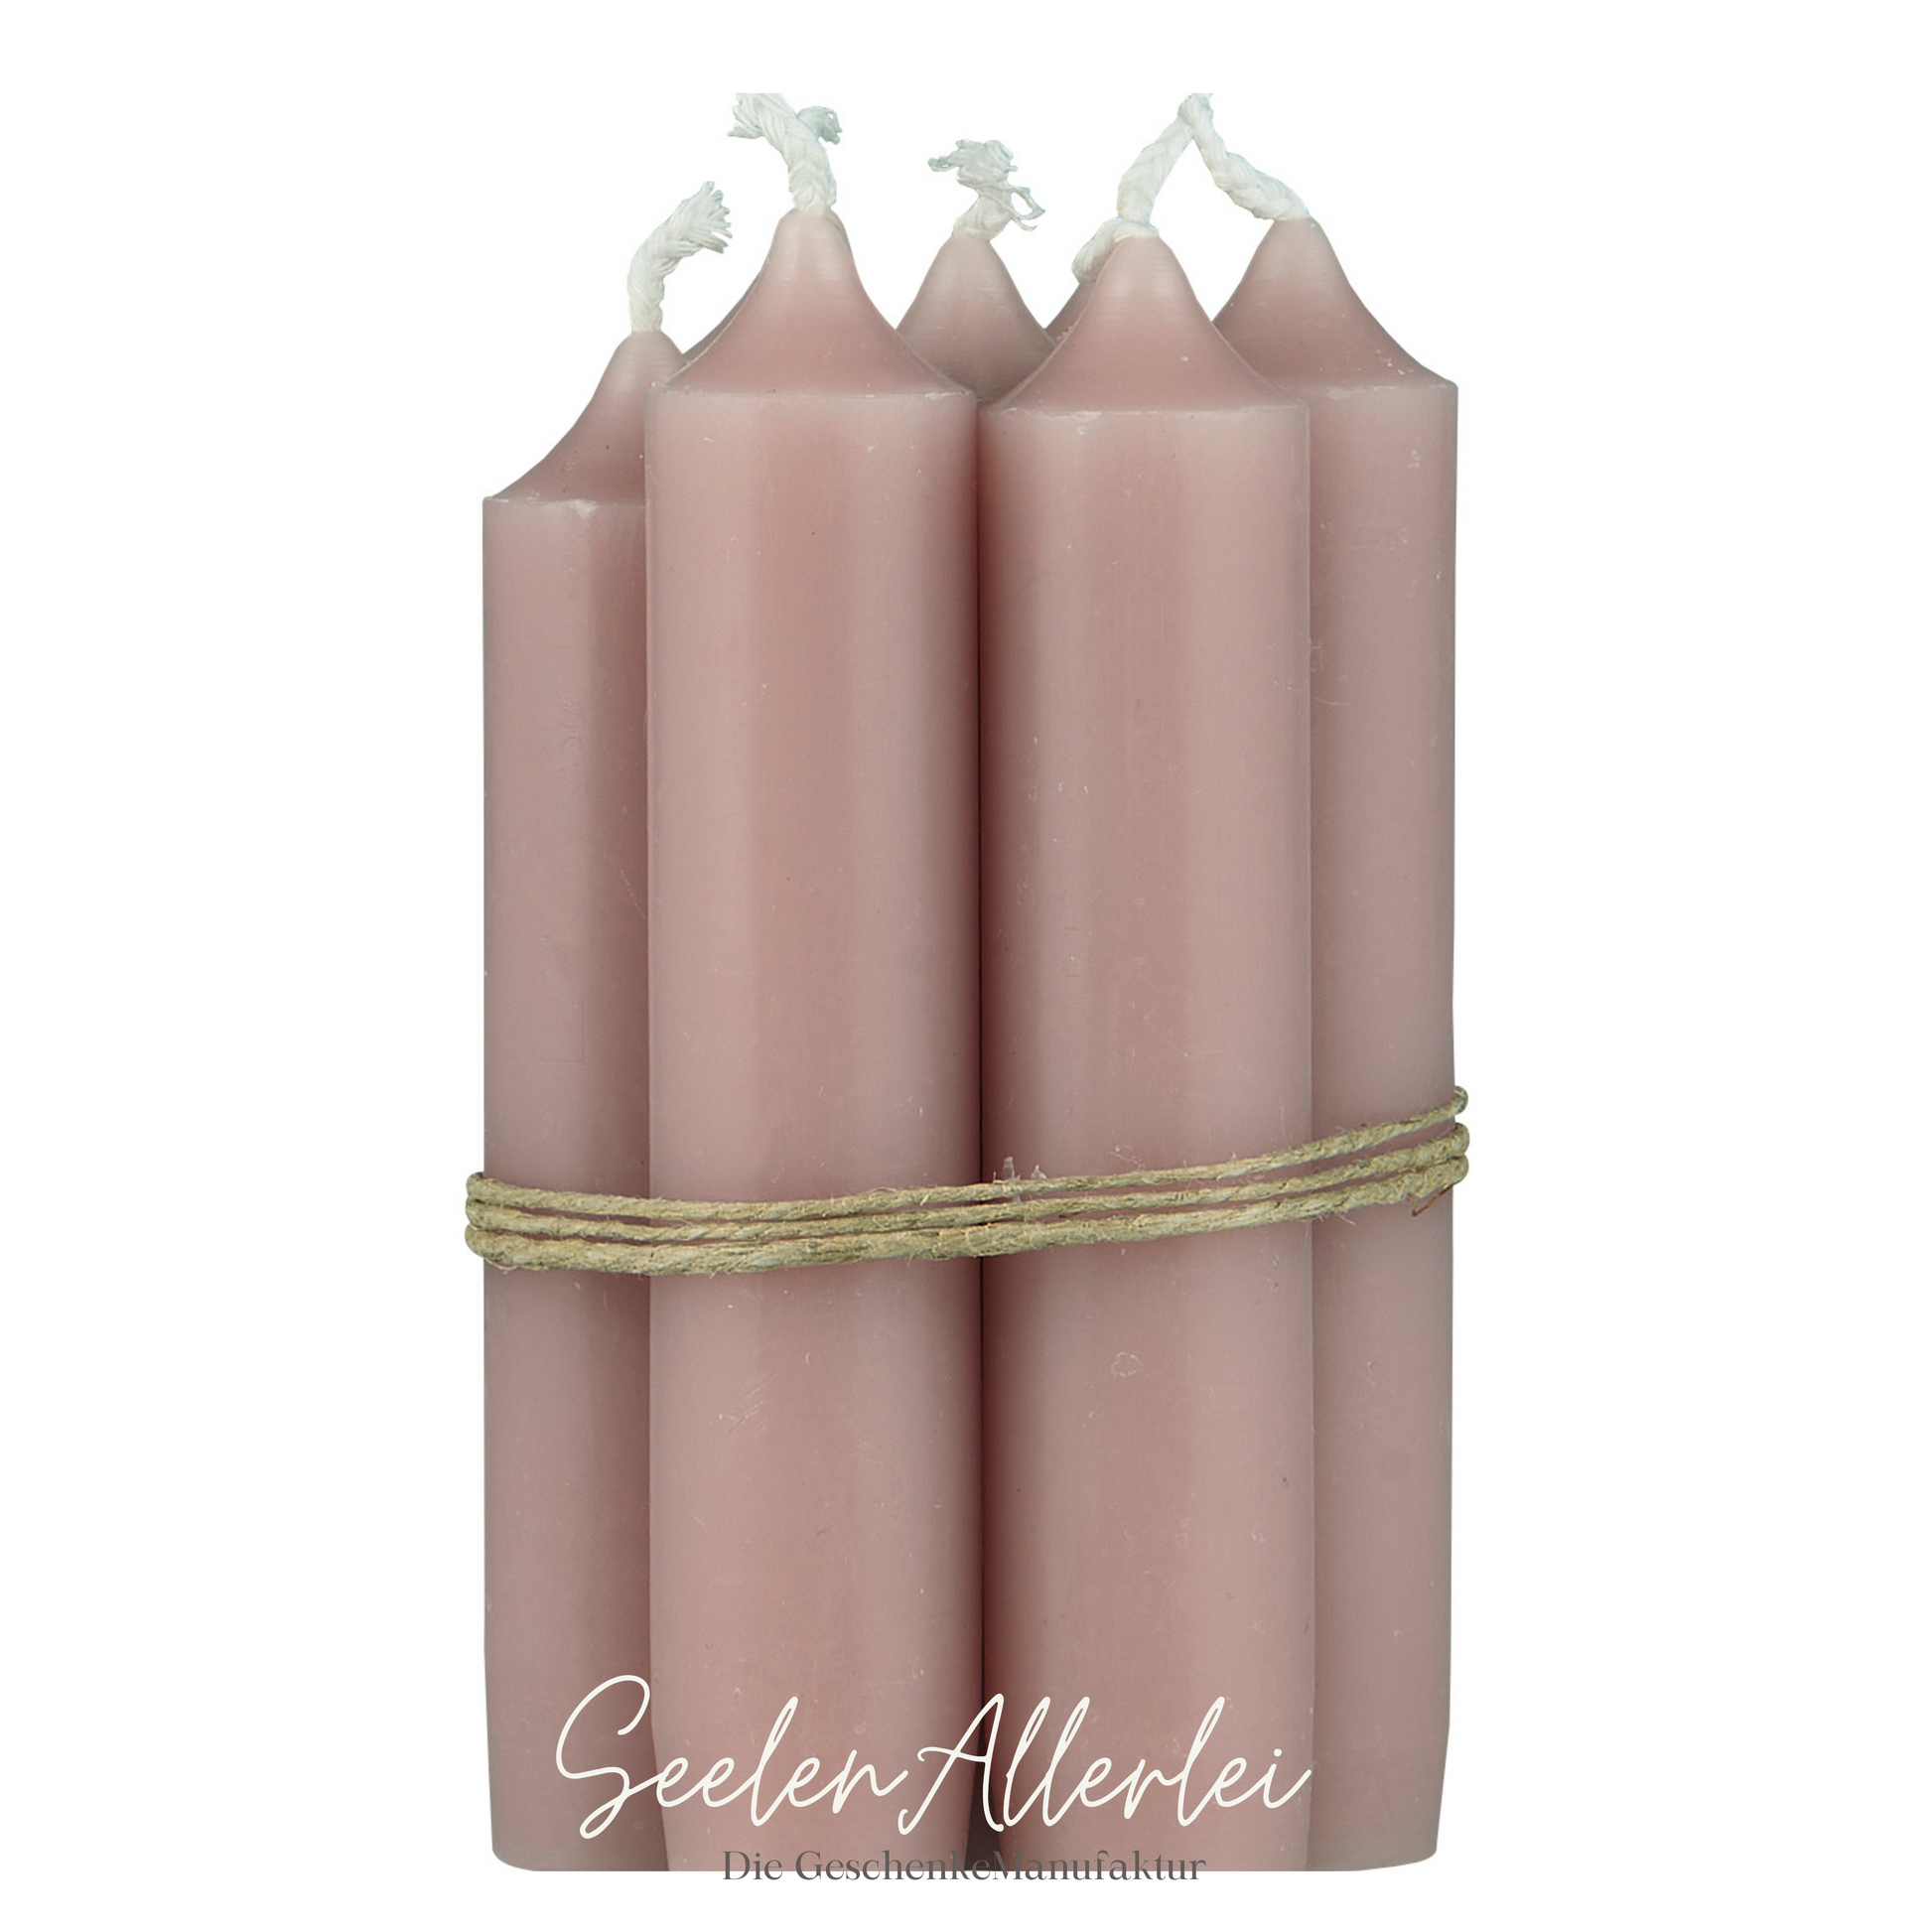 6 rosafarbene Kerzen vor weißem Hintergrund als Detailaufnahme der Kerzenvarianten